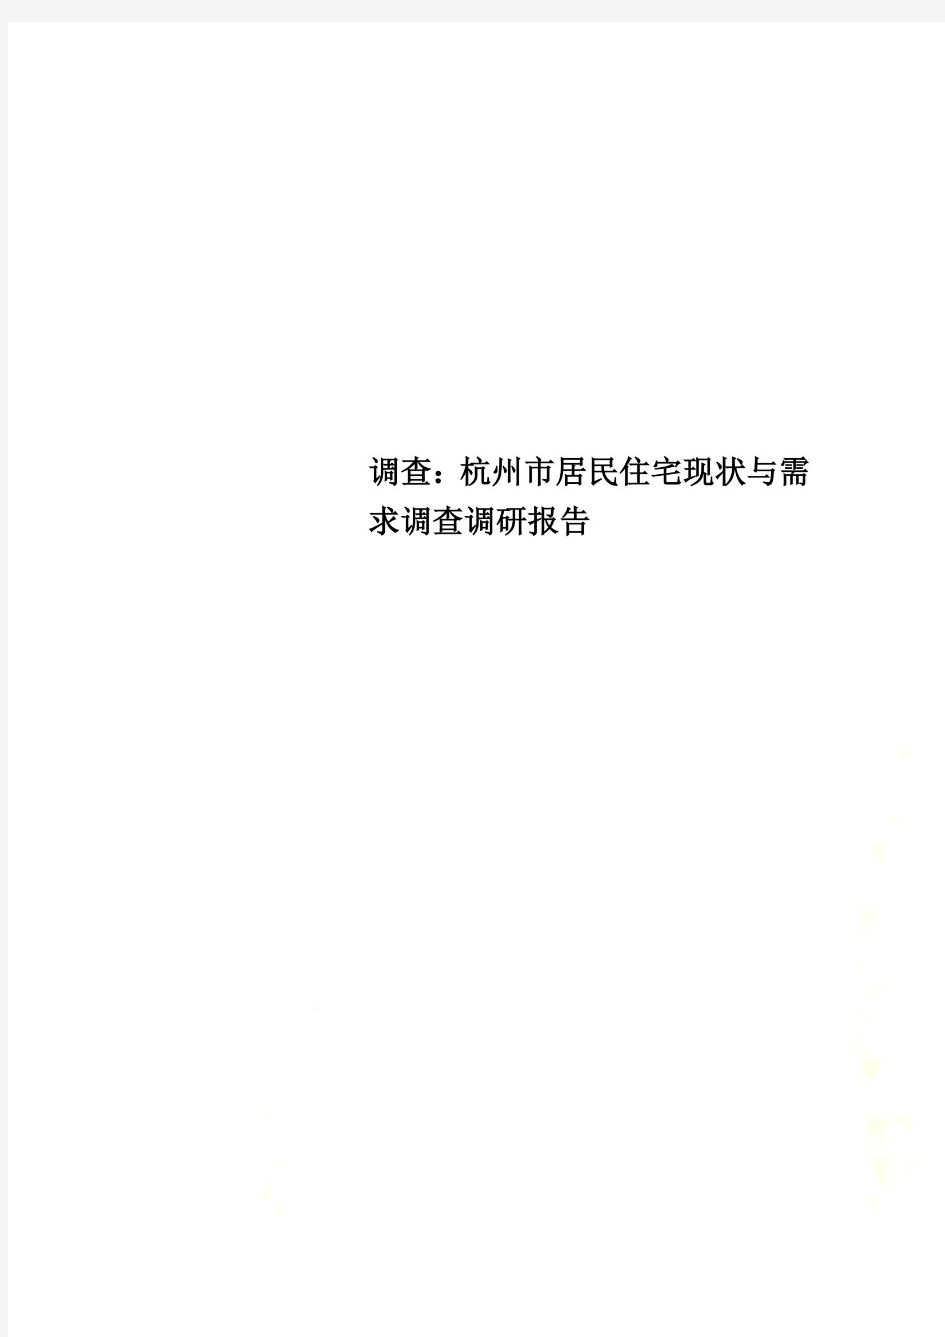 调查：杭州市居民住宅现状与需求调查调研报告